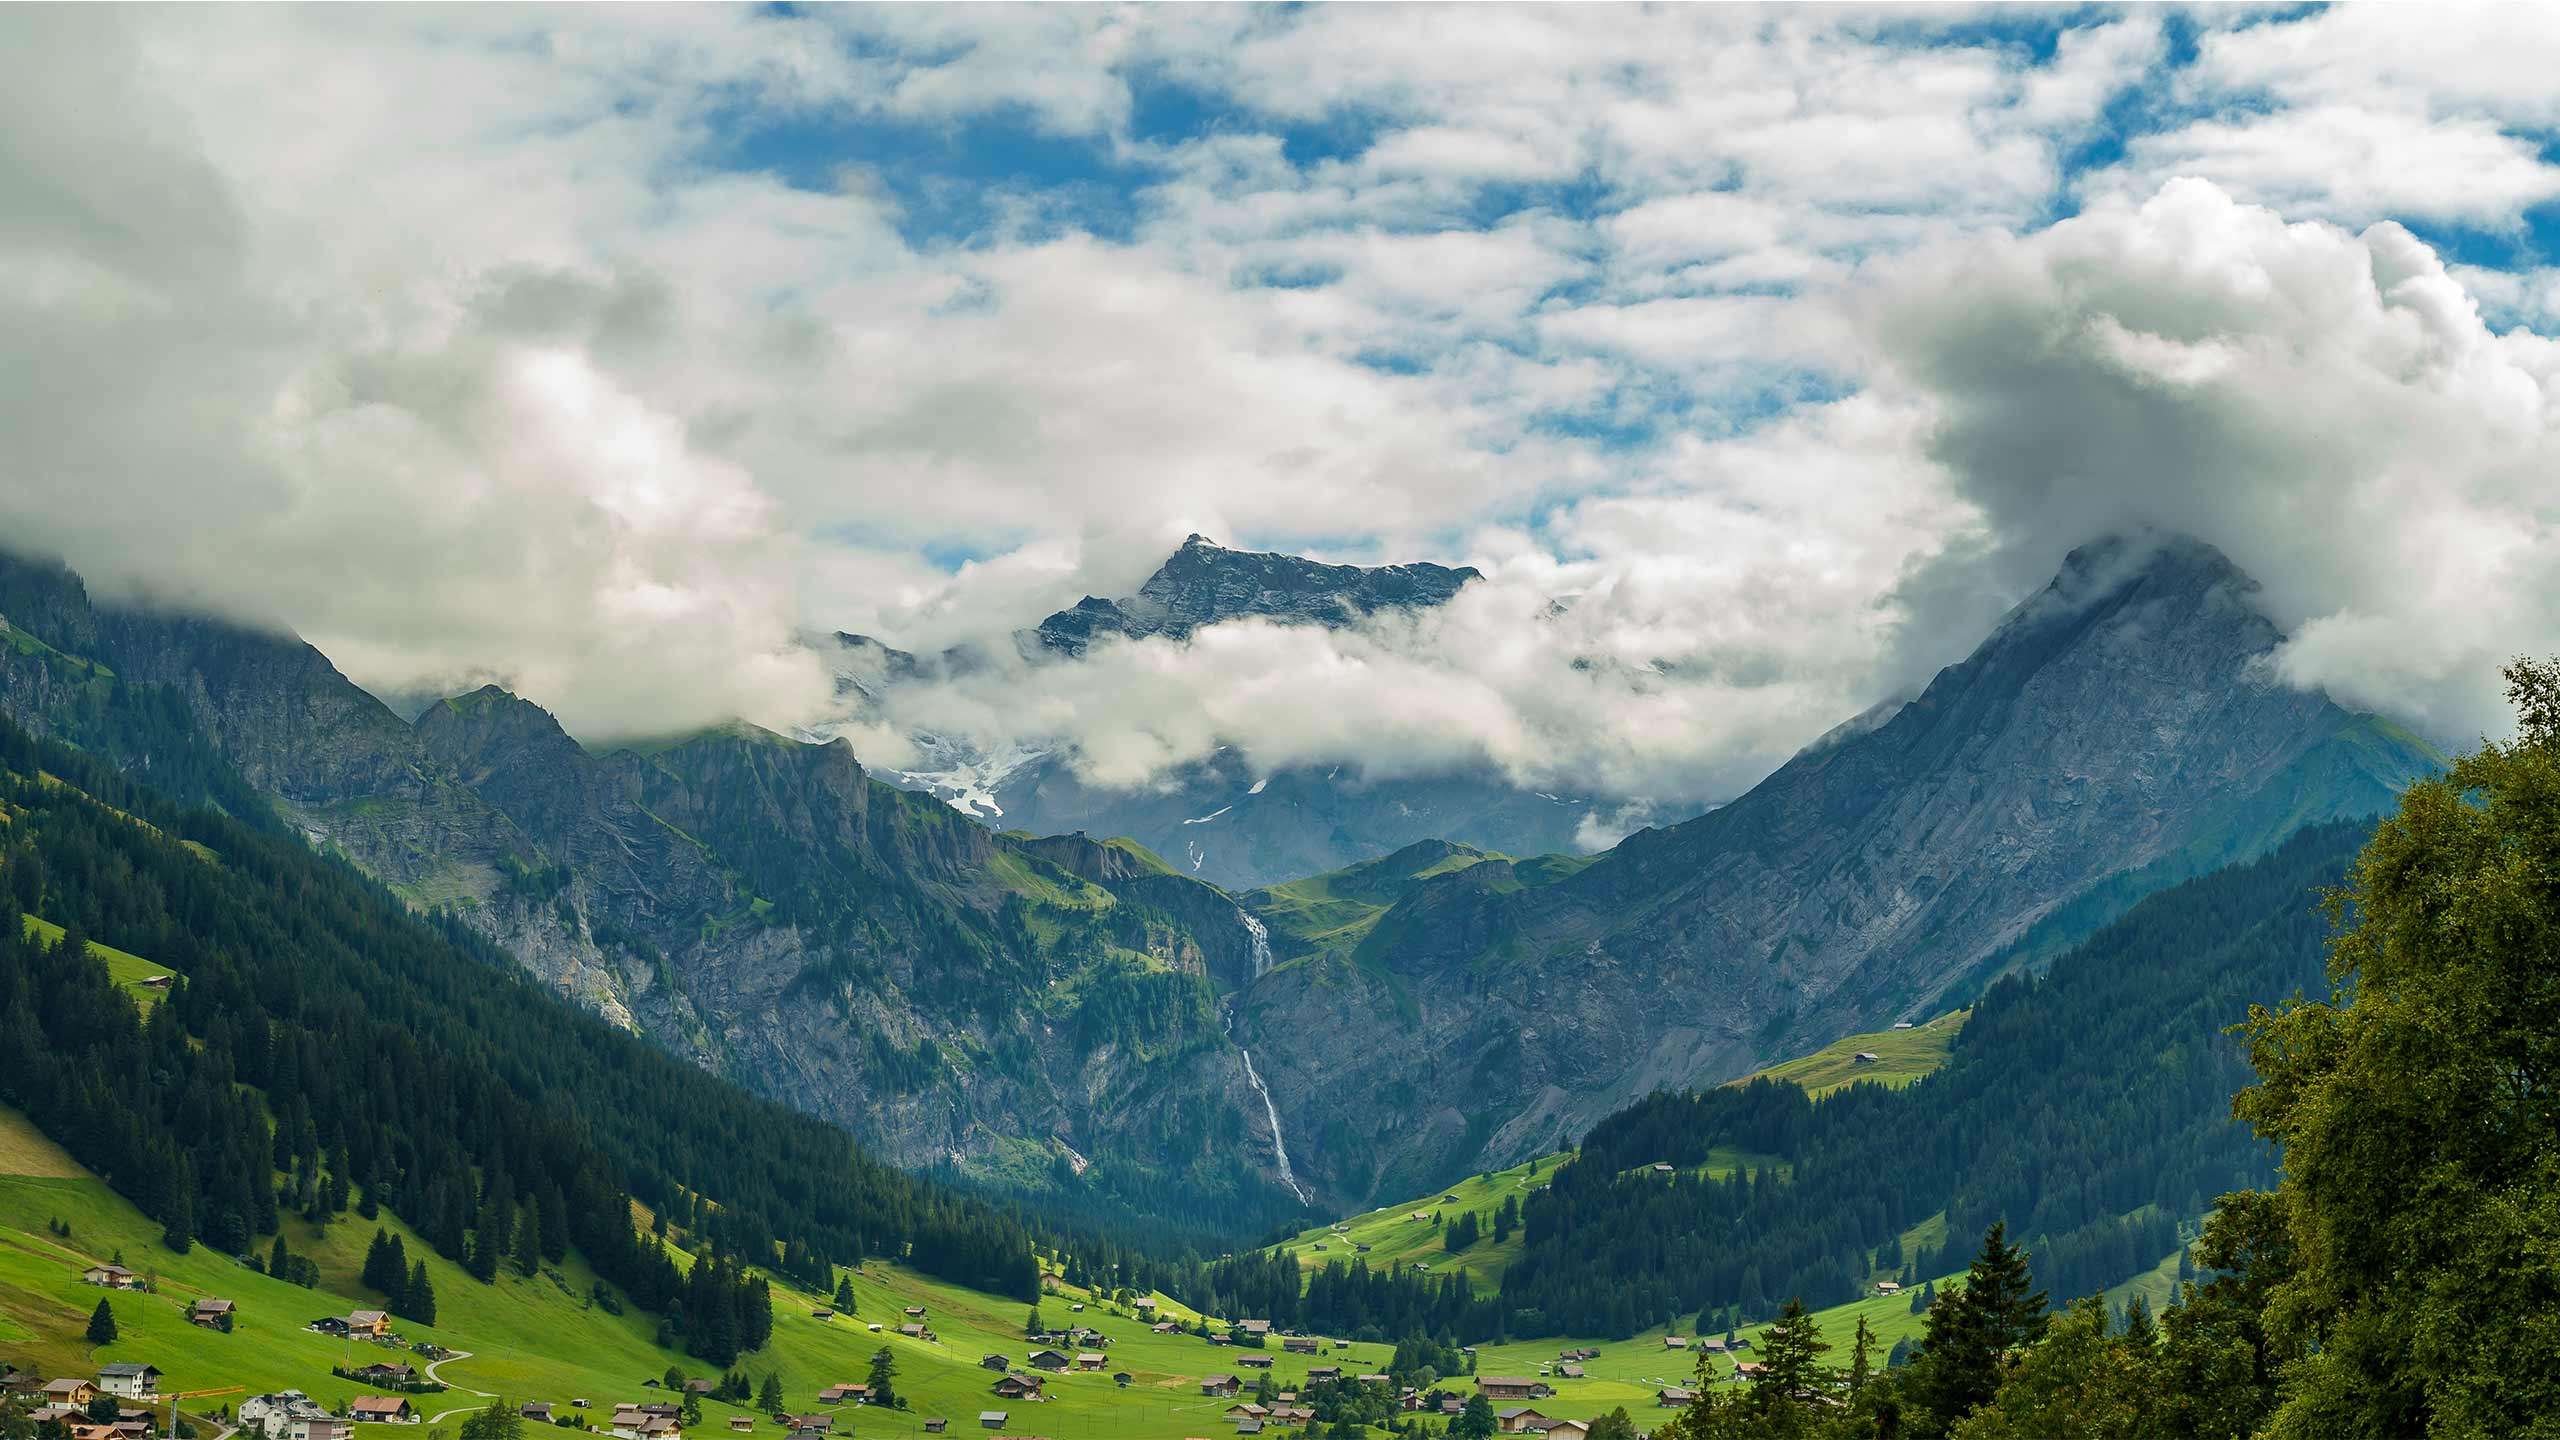 Luxury Switzerland Swiss Alps Walk 6D5N (Interlaken to Zermatt), Fully Guided